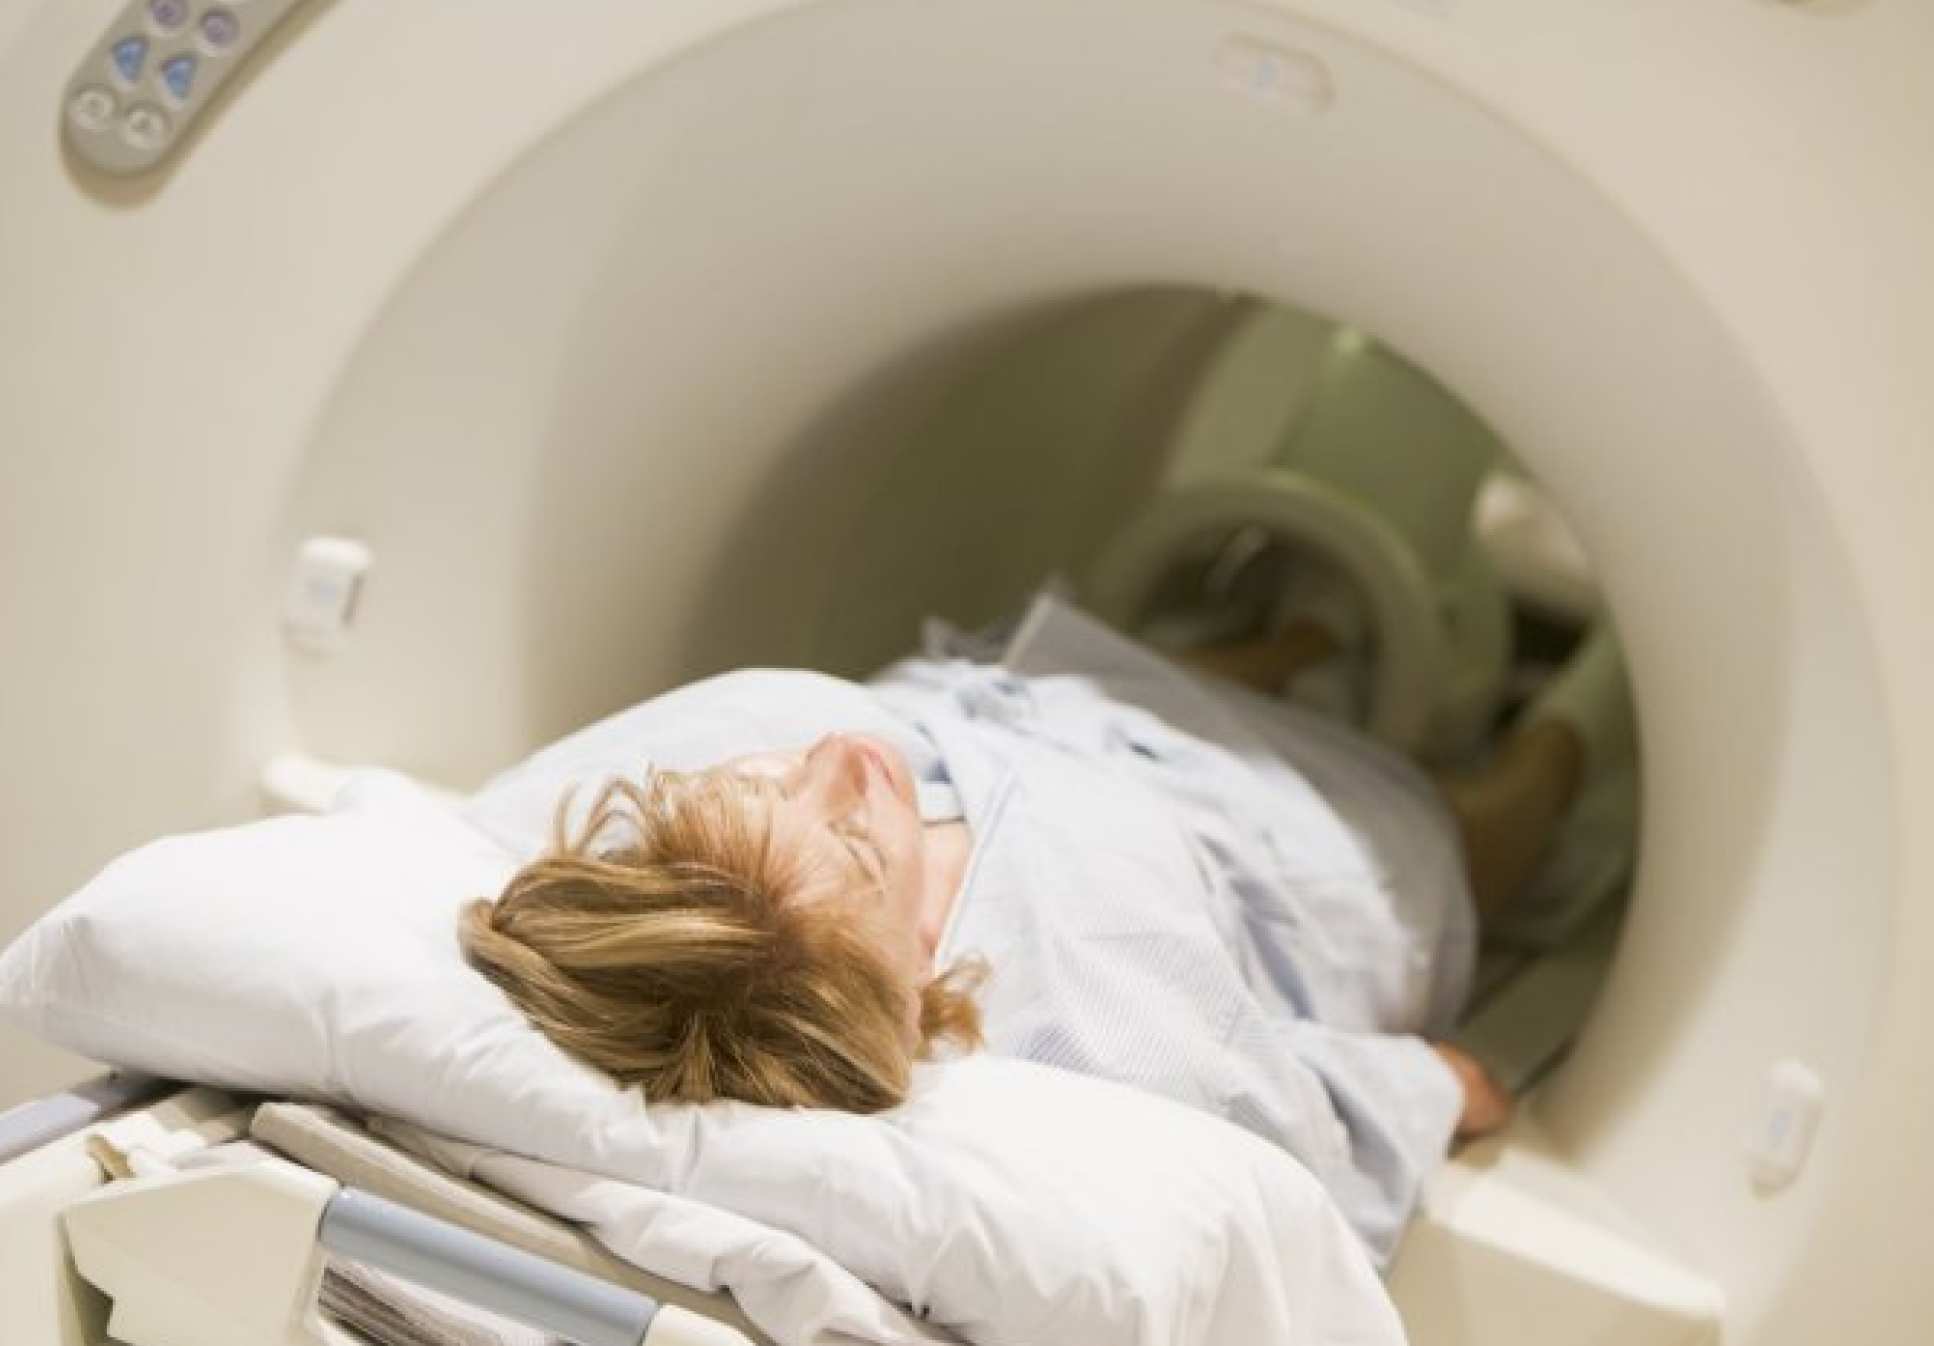 Woman lying flat inside CT scanner